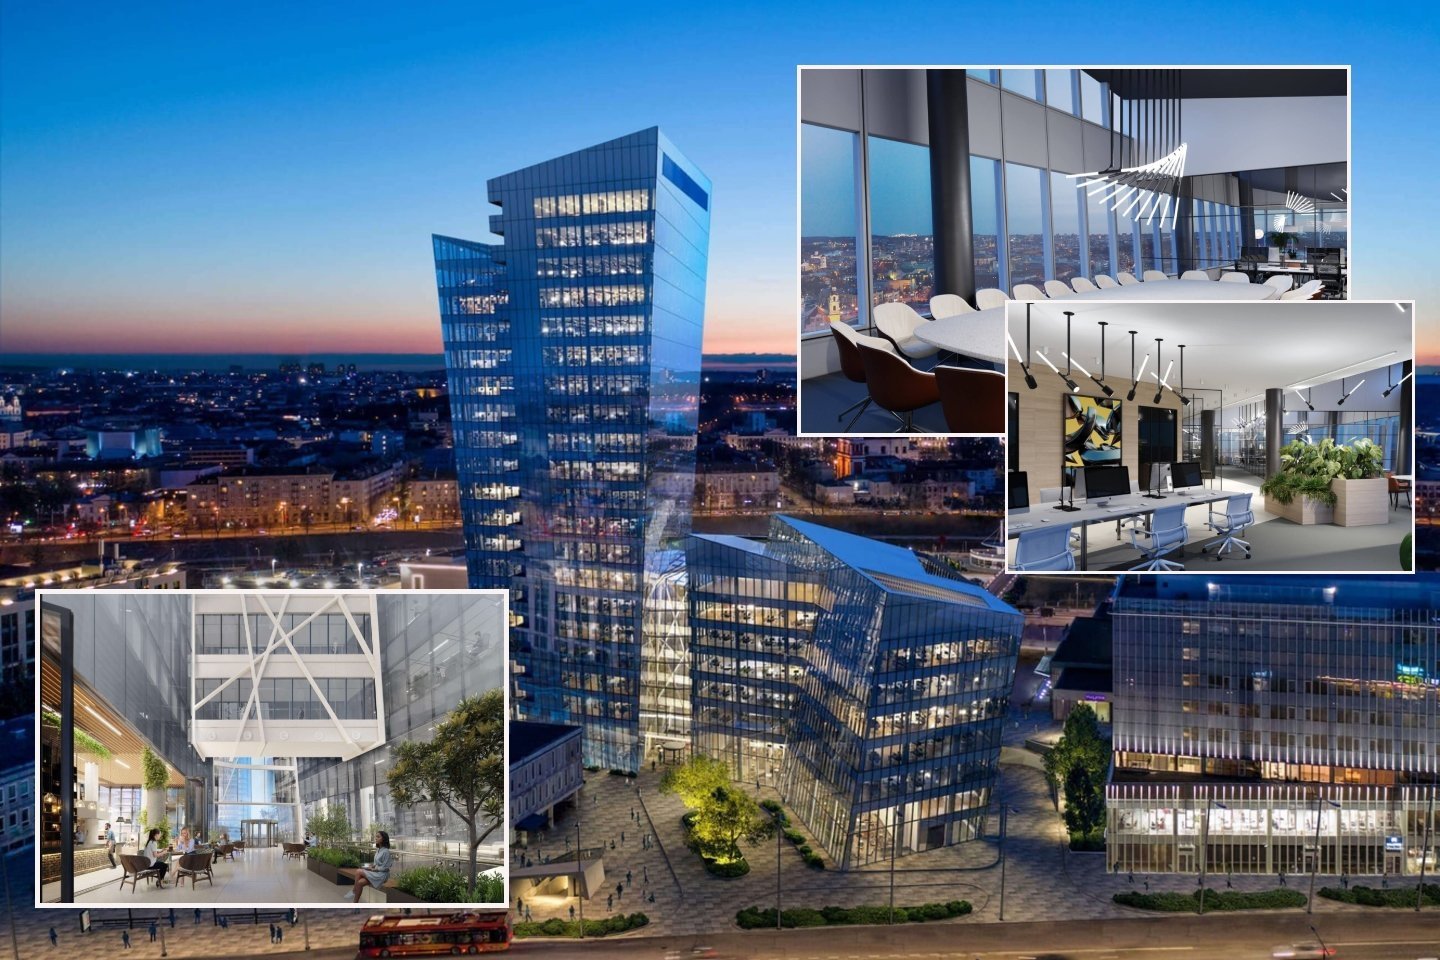 Pasaulinio garso architekto Danielio Libeskindo projektas suteiks naują veidą šalies biurų rinkai. Jo fasadas buvo stiklinamas daugiau nei metus.